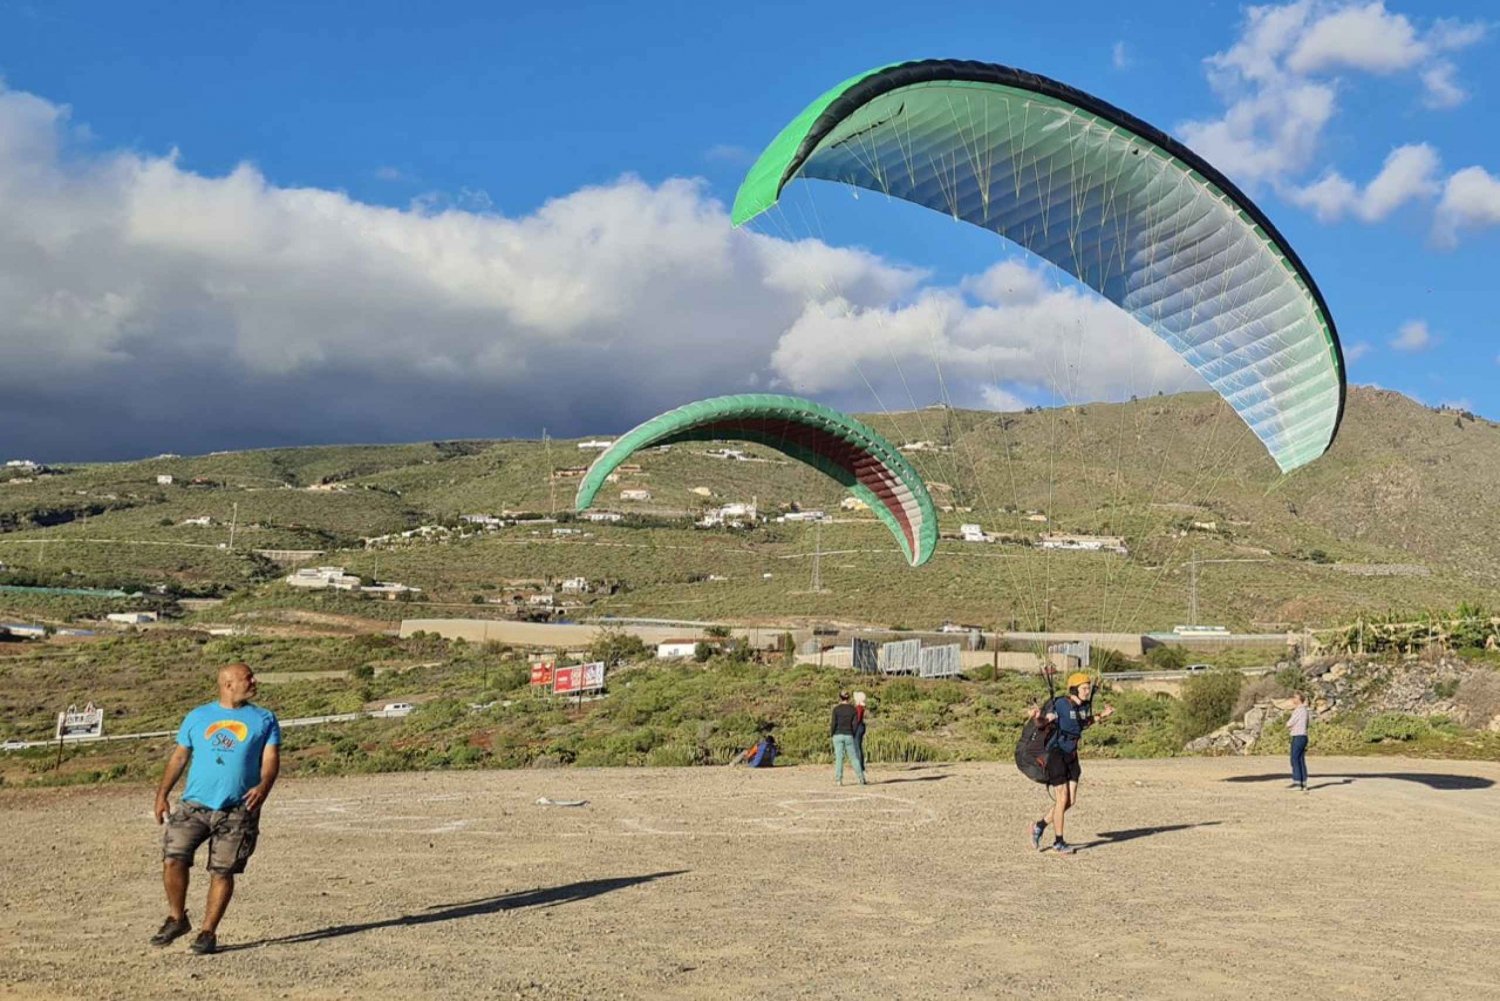 Flash-kursus i paragliding på Tenerife